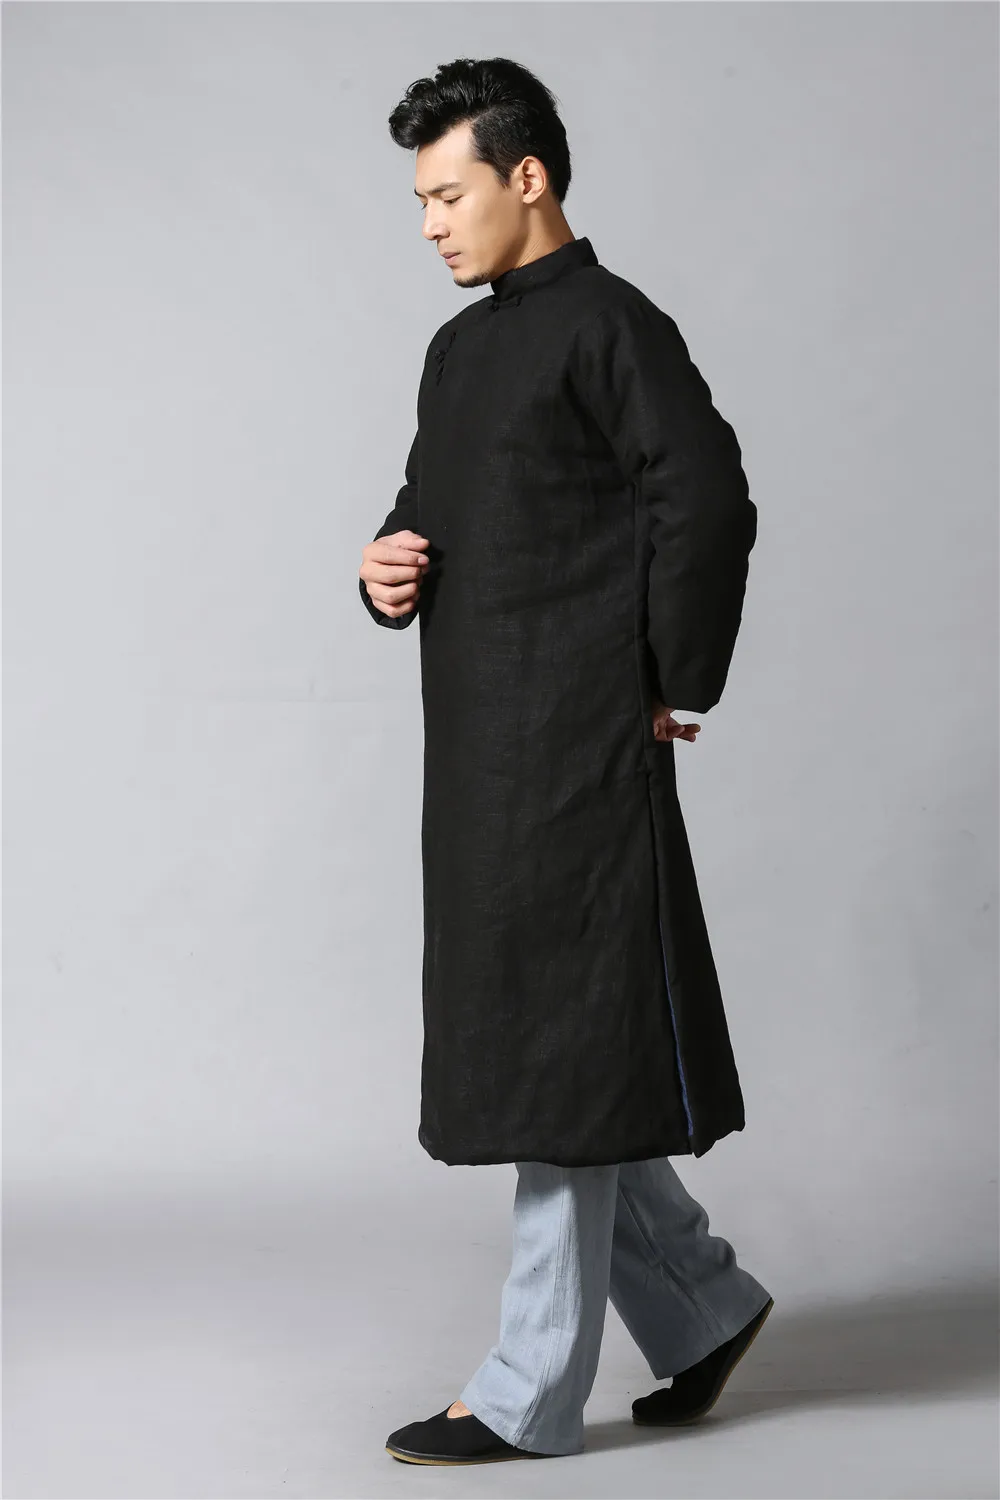 Мужской длинный Тренч в стиле ретро, хлопковая стеганая одежда, хлопковое платье на подкладке, ветровка, длинный плащ, ветровка